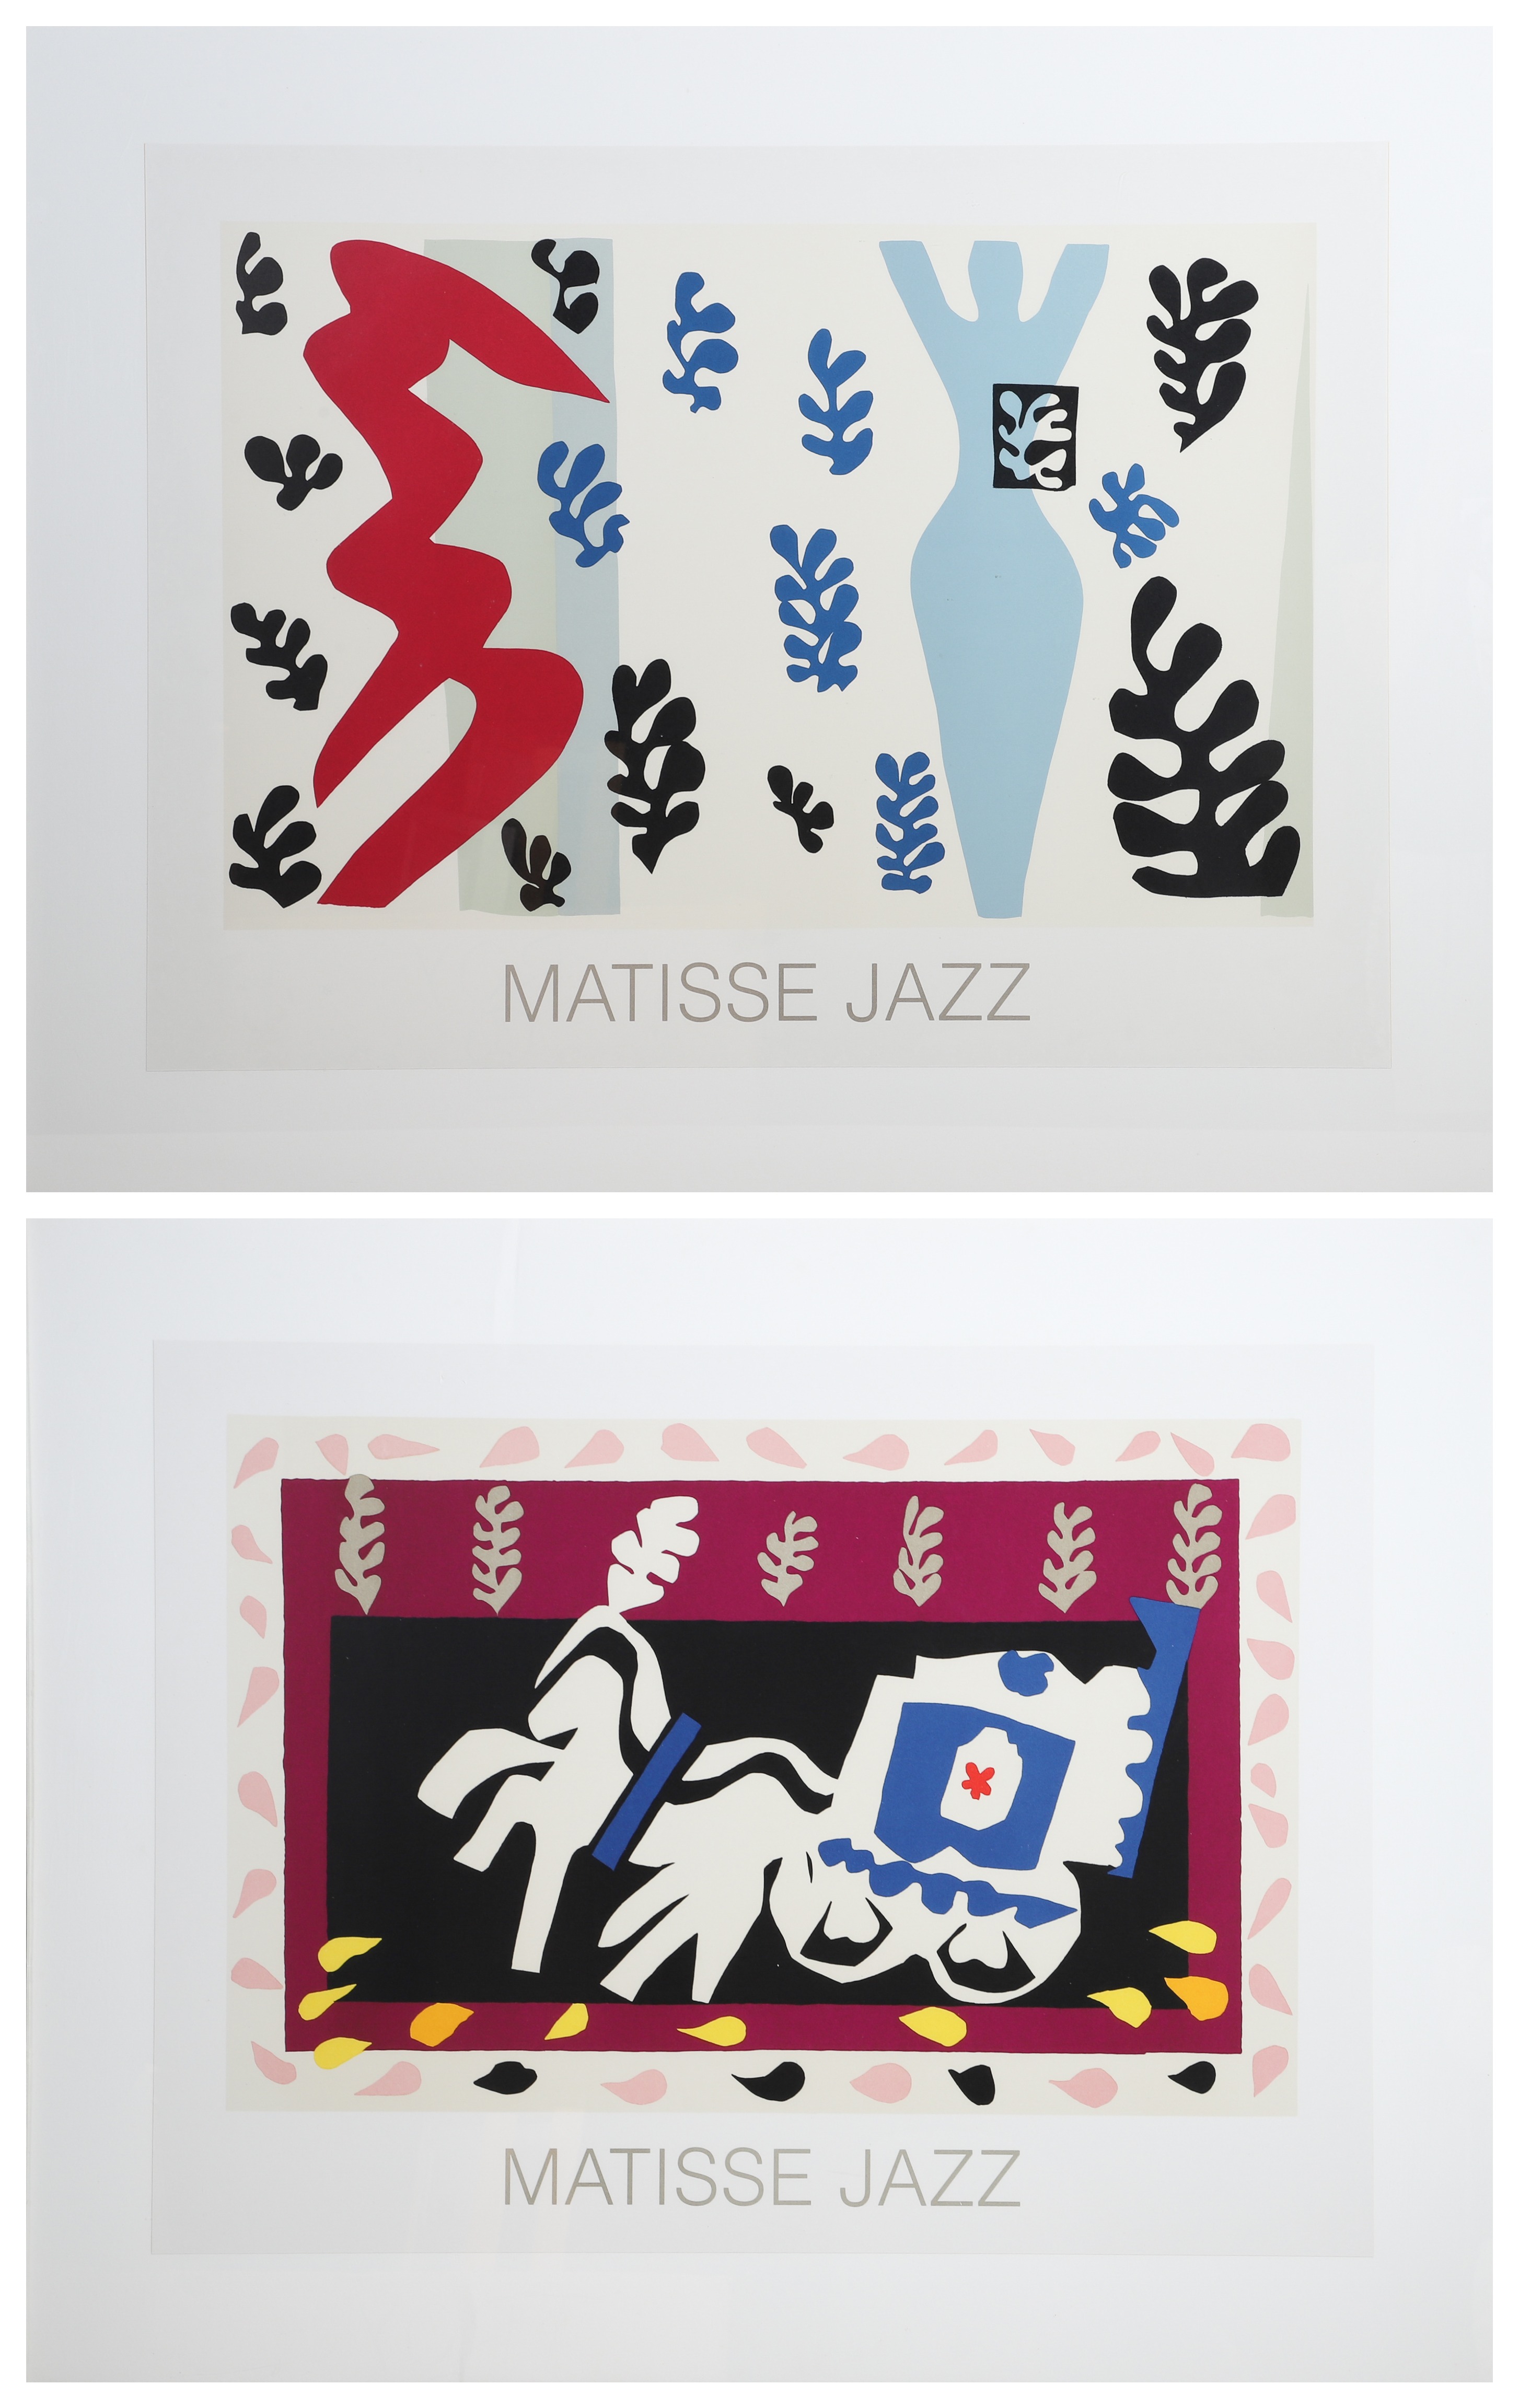  2 Matisse jazz exhibition posters  308d10